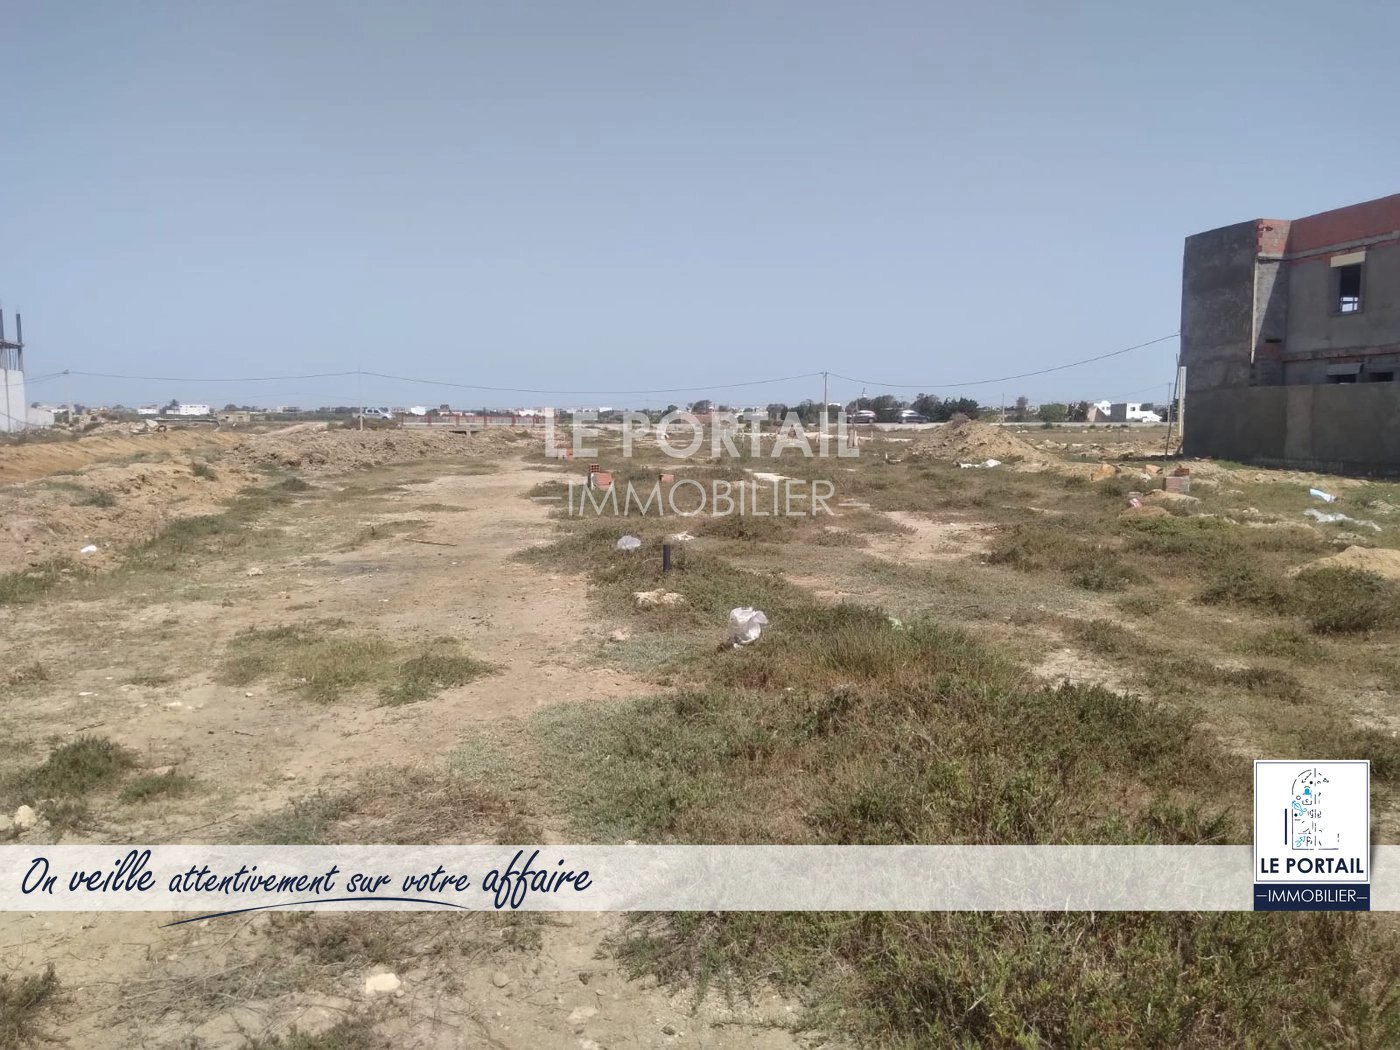 publié par LE PORTAIL IMMOBILIER KELIBIA - terrain à vendre - #أرض في #قليبية↗️ تحديدا في عين قرنز 🔥🔥                       - Terrains et Fermes